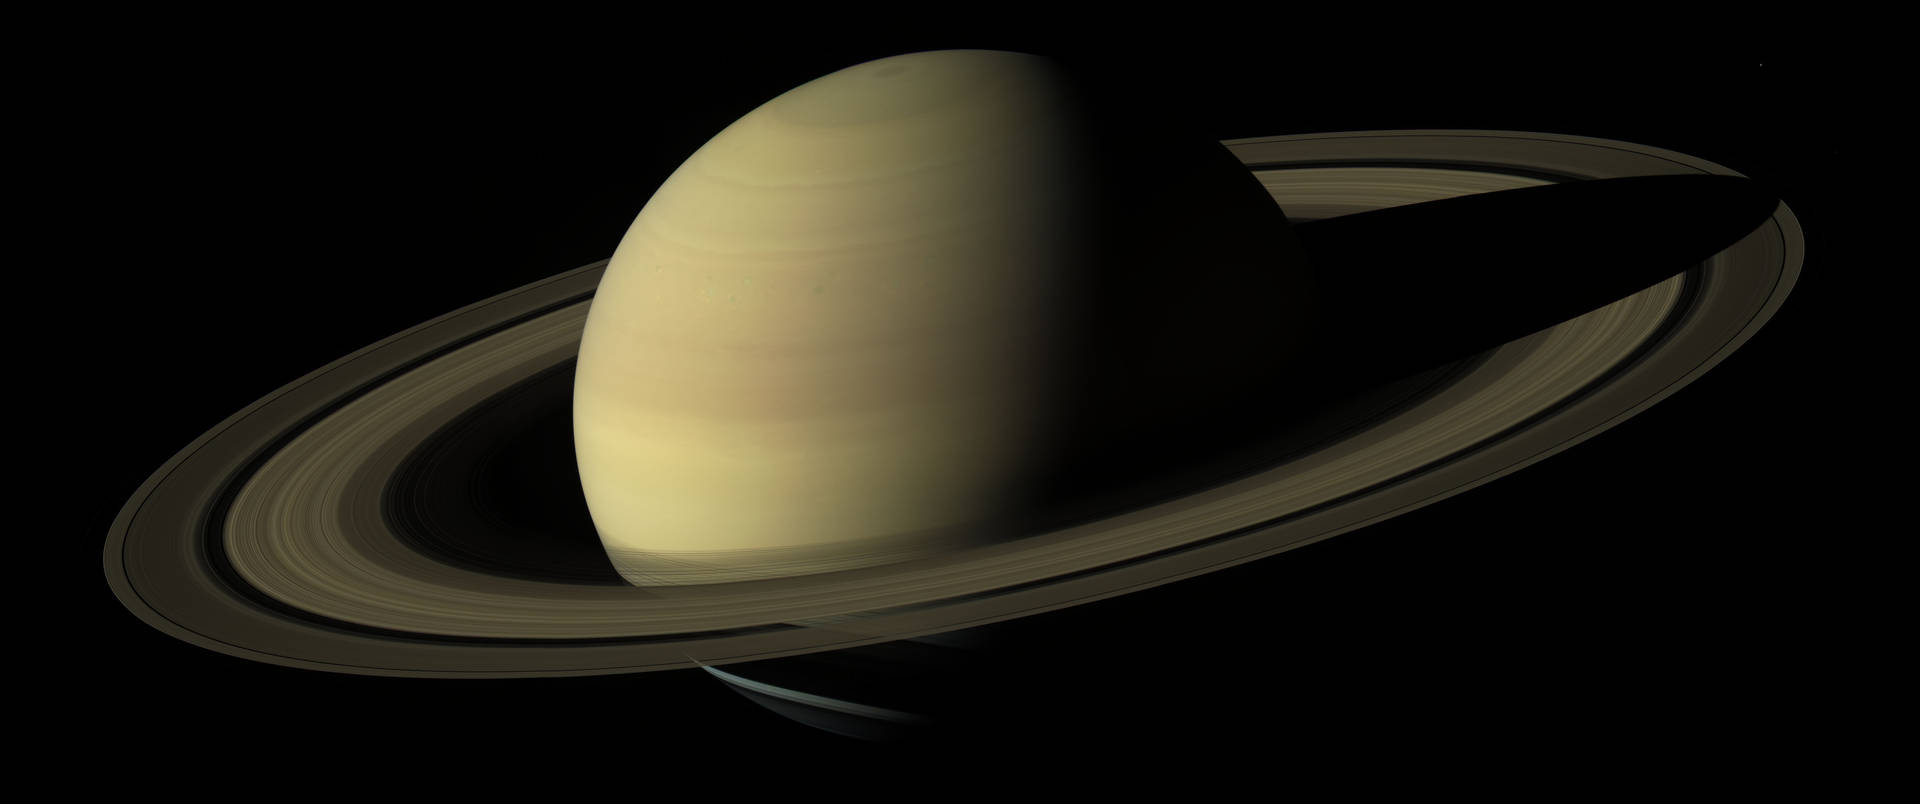 Planet Saturn On Dark Space Background